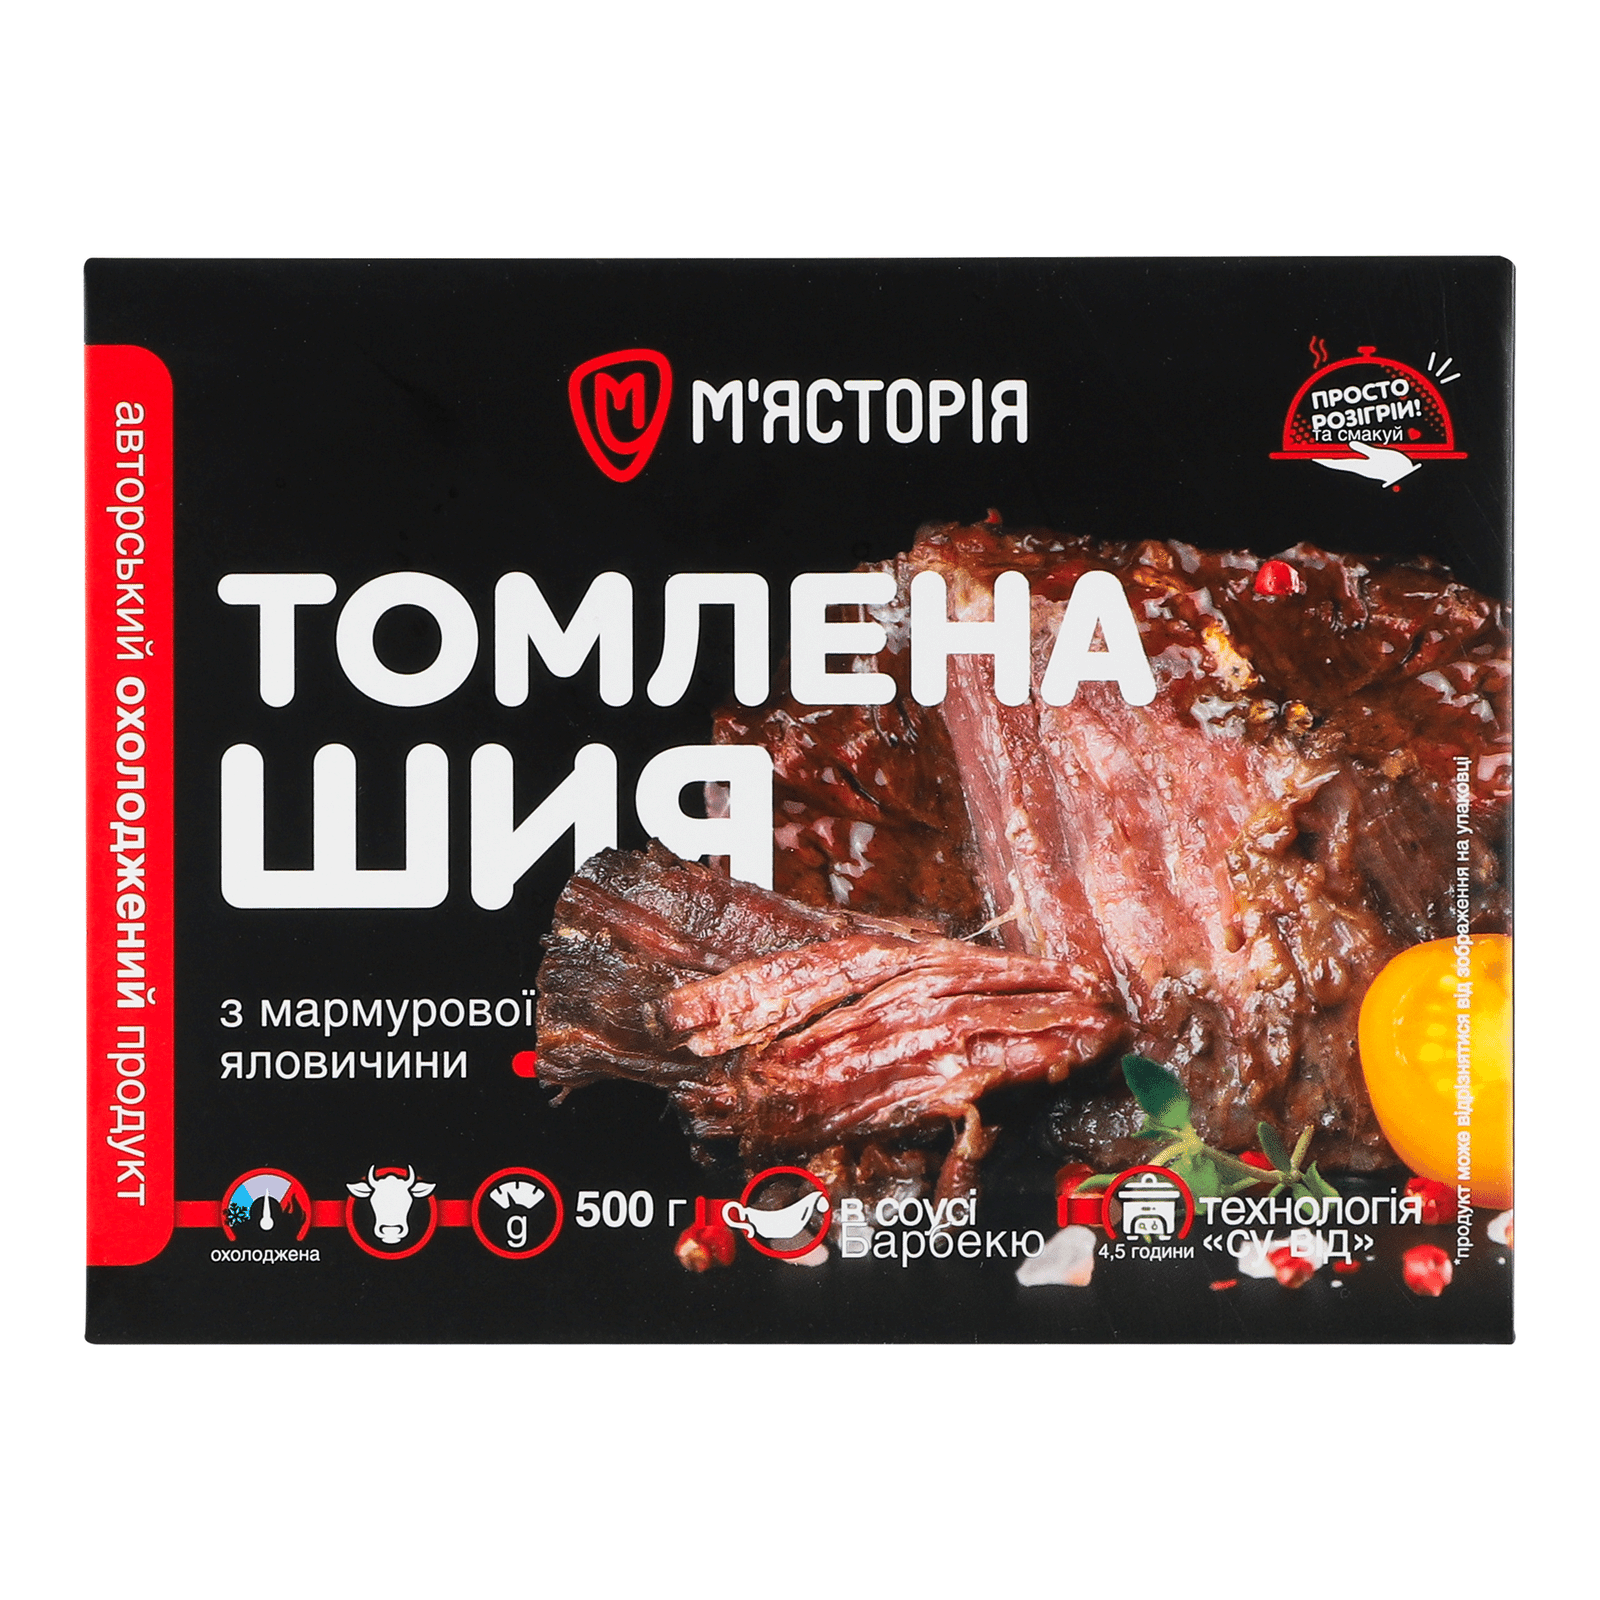 Шия томлена «М'ясторія» з мармурової яловичини з соусом барбекю - 1